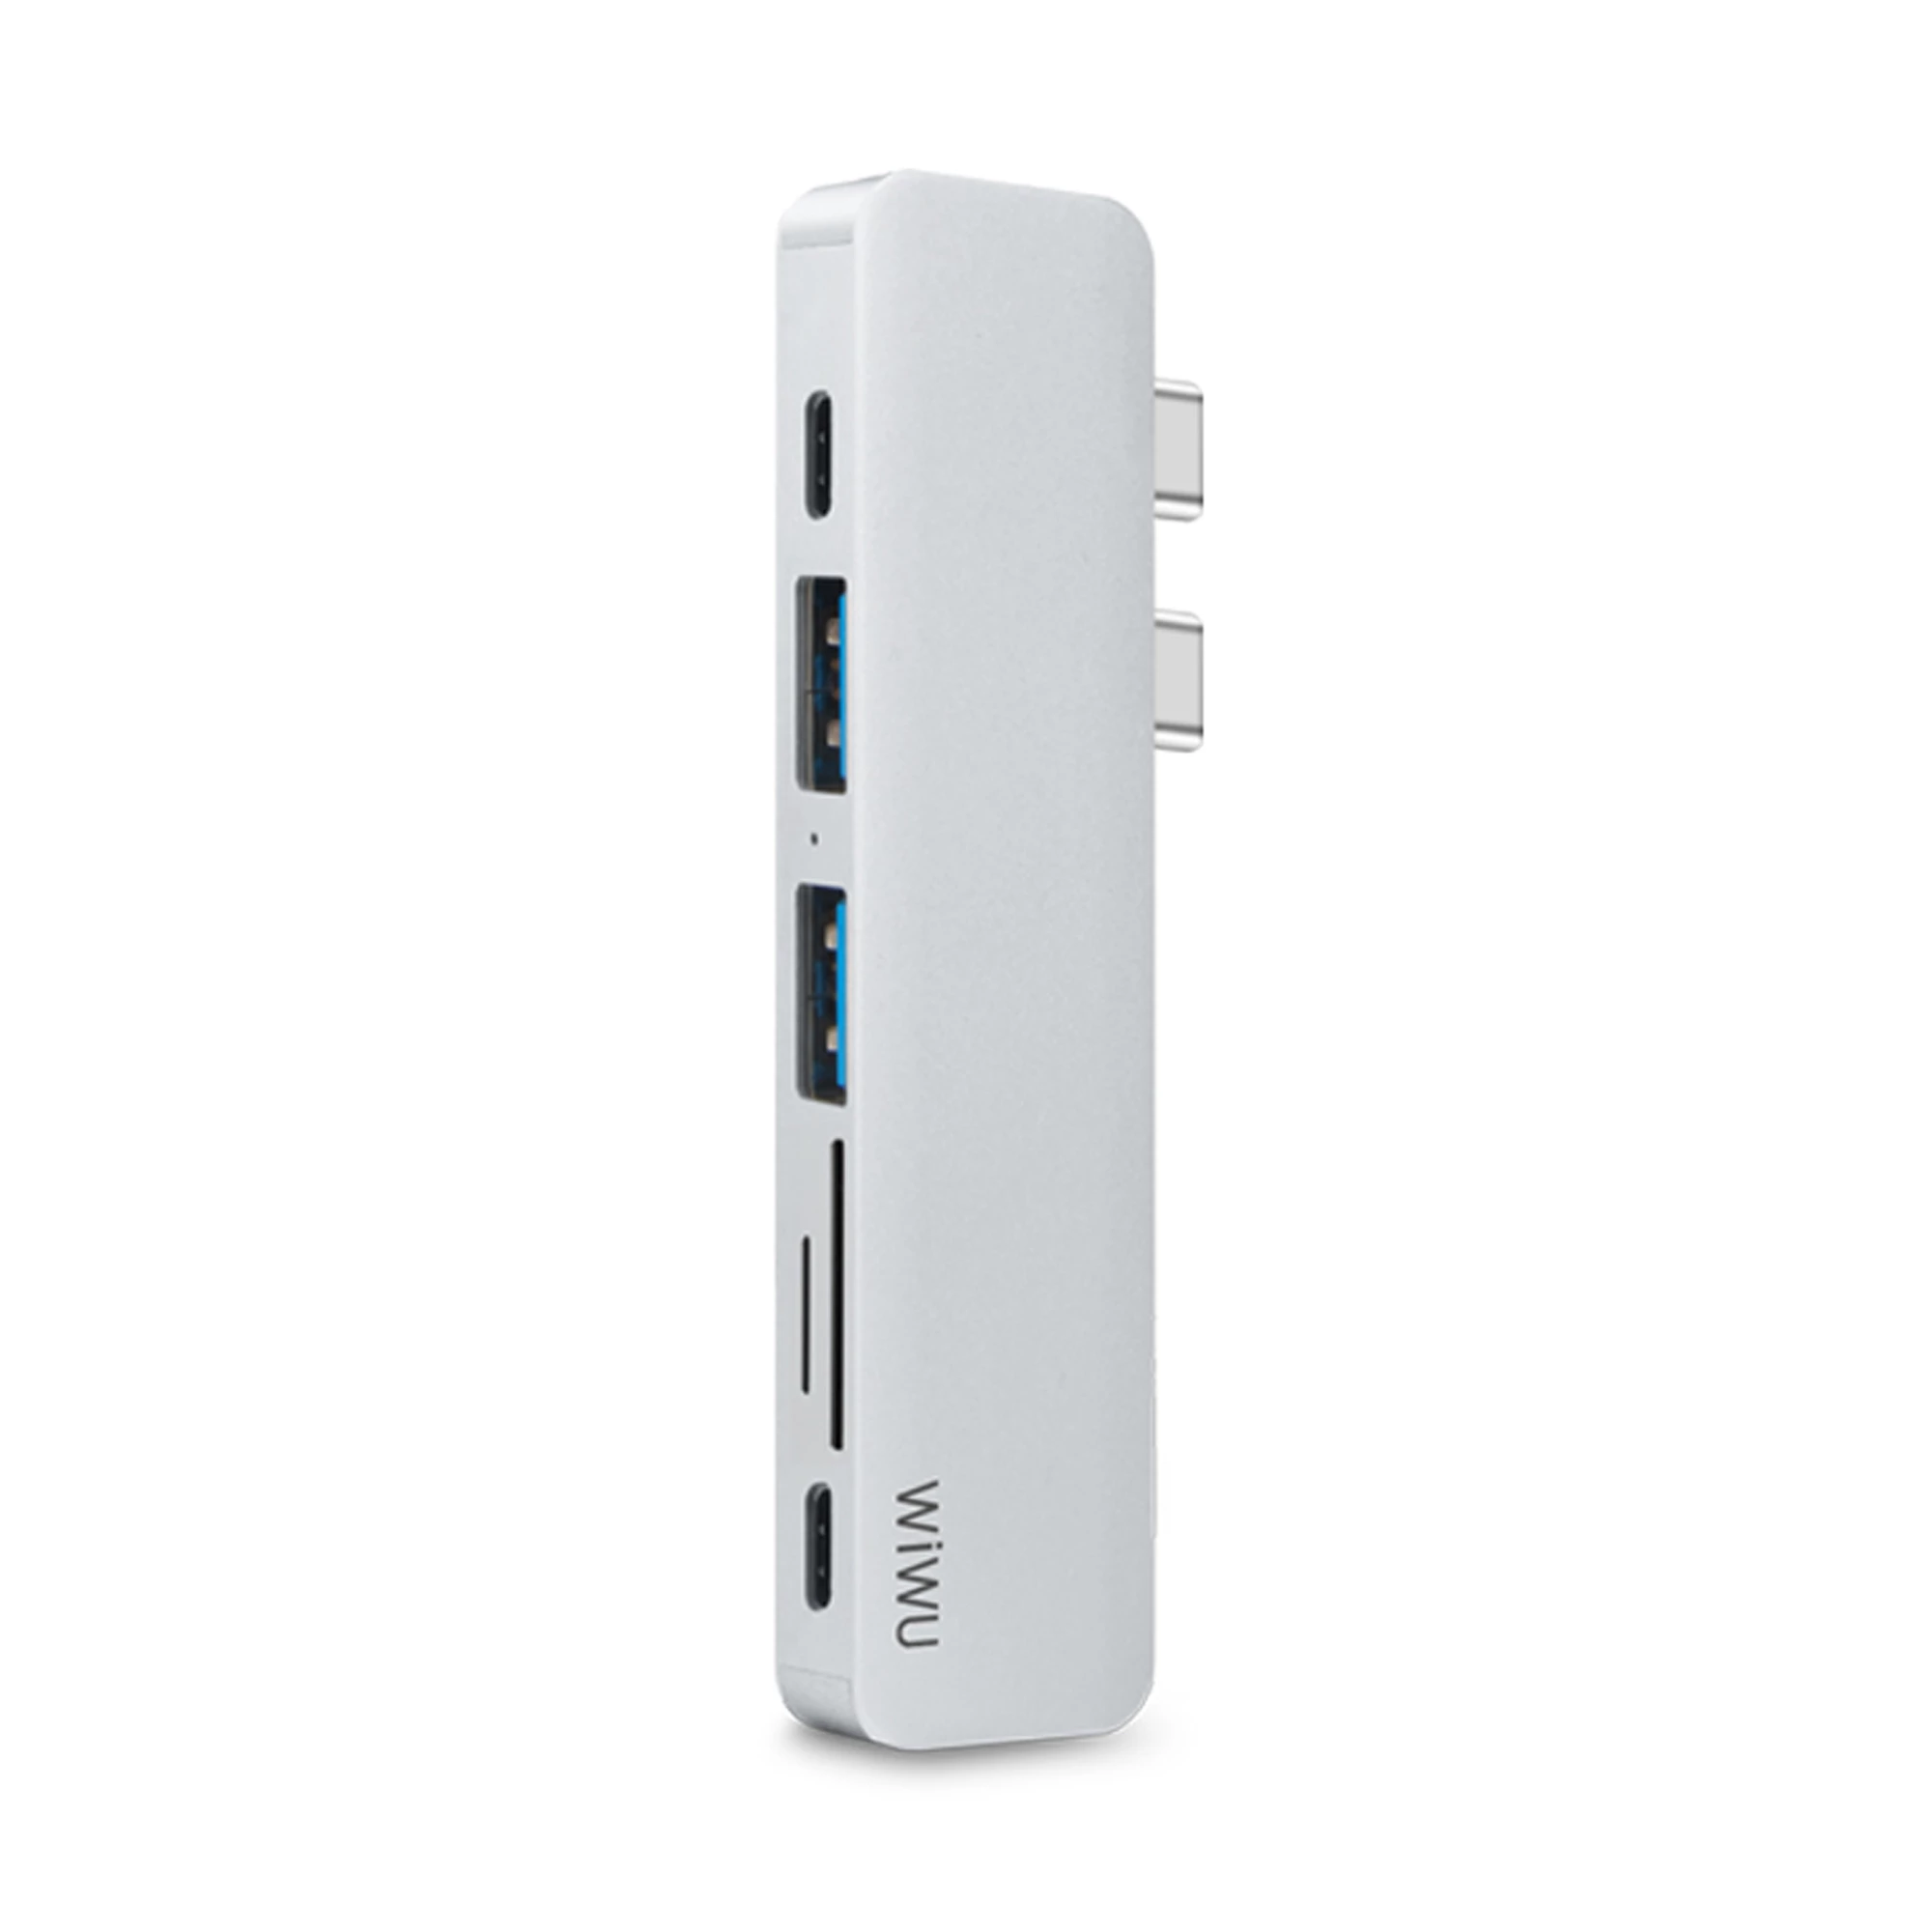 WiWU T8 7 in 1 USB-C Hub Silver